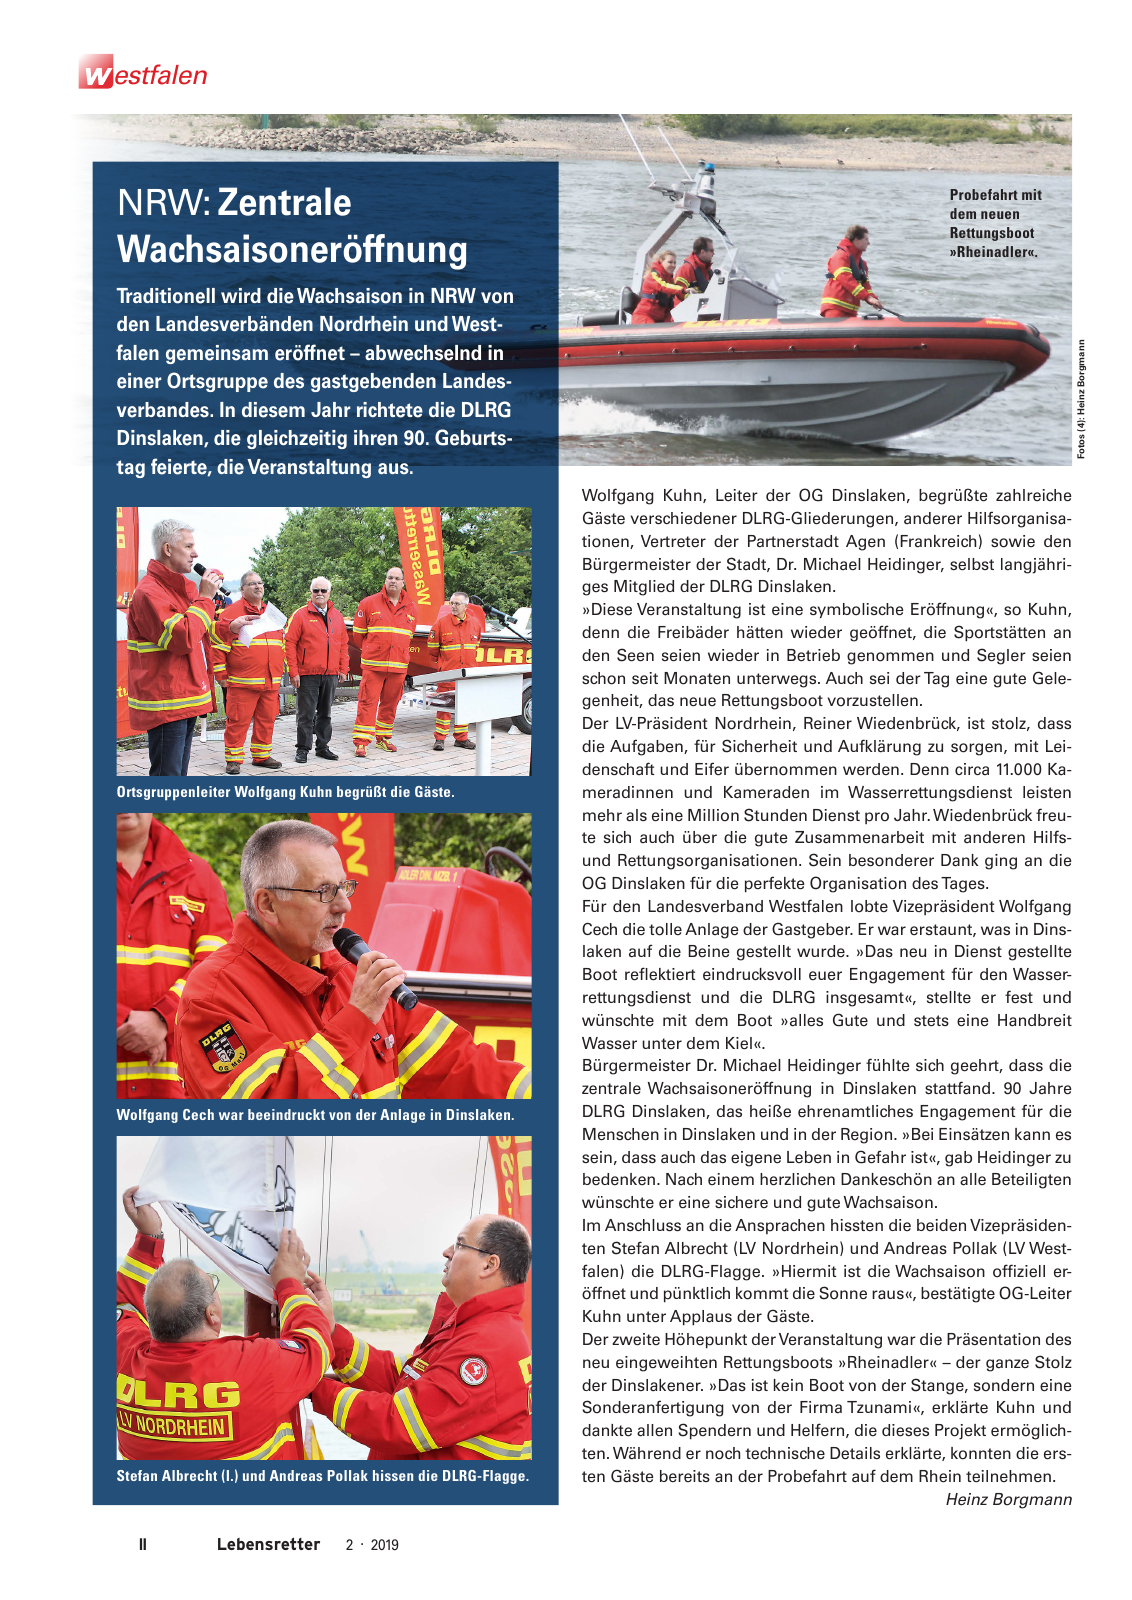 Vorschau Lebensretter 2/2019 - Westfalen Regionalausgabe Seite 4